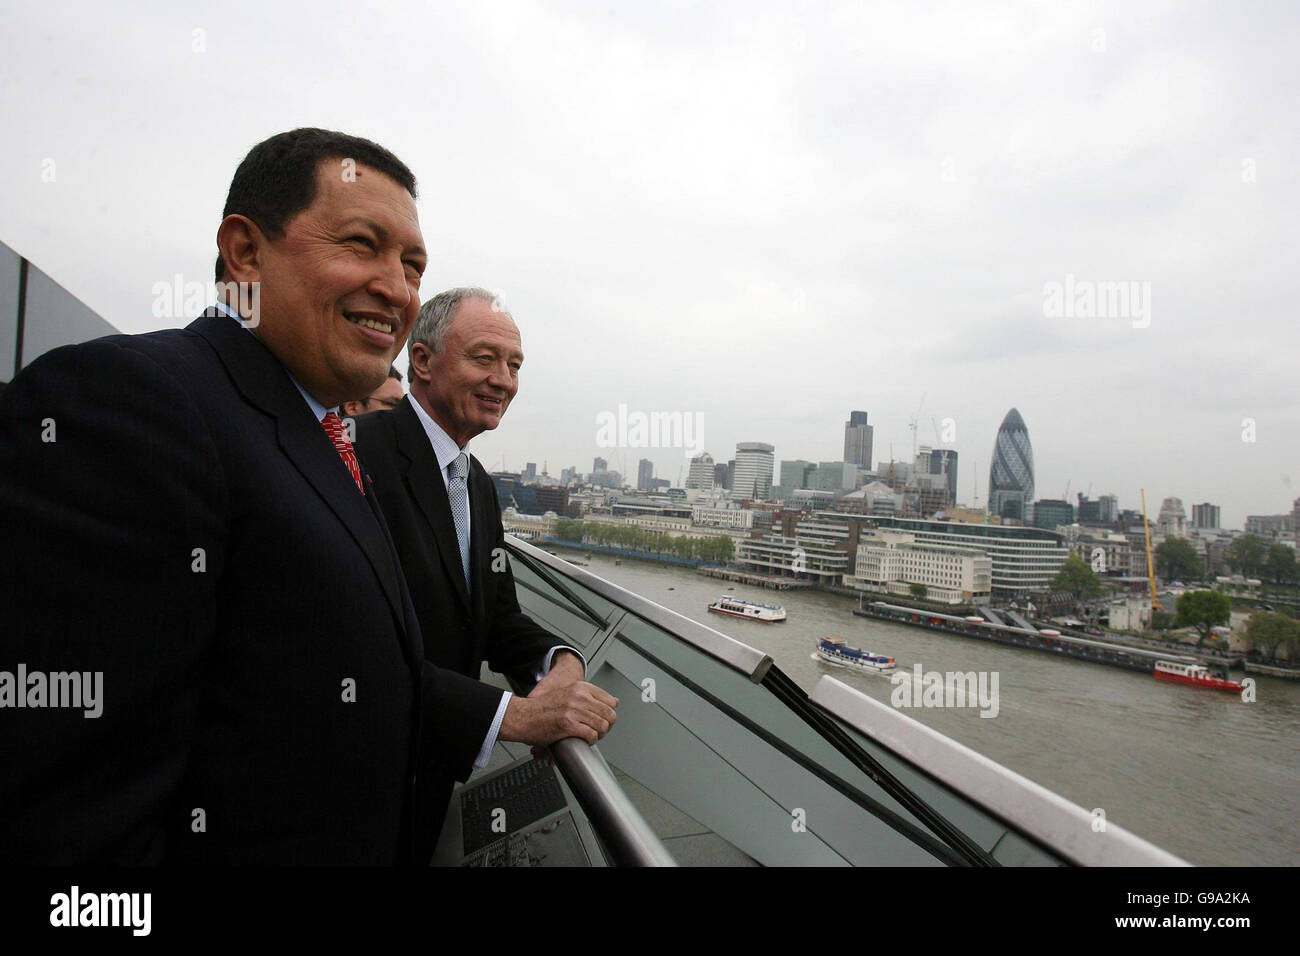 Der Bürgermeister von London, Ken Livingstone (rechts), steht mit Präsident Hugo Chavez, dem Präsidenten Venezuelas, im GLA-Gebäude in London. Stockfoto